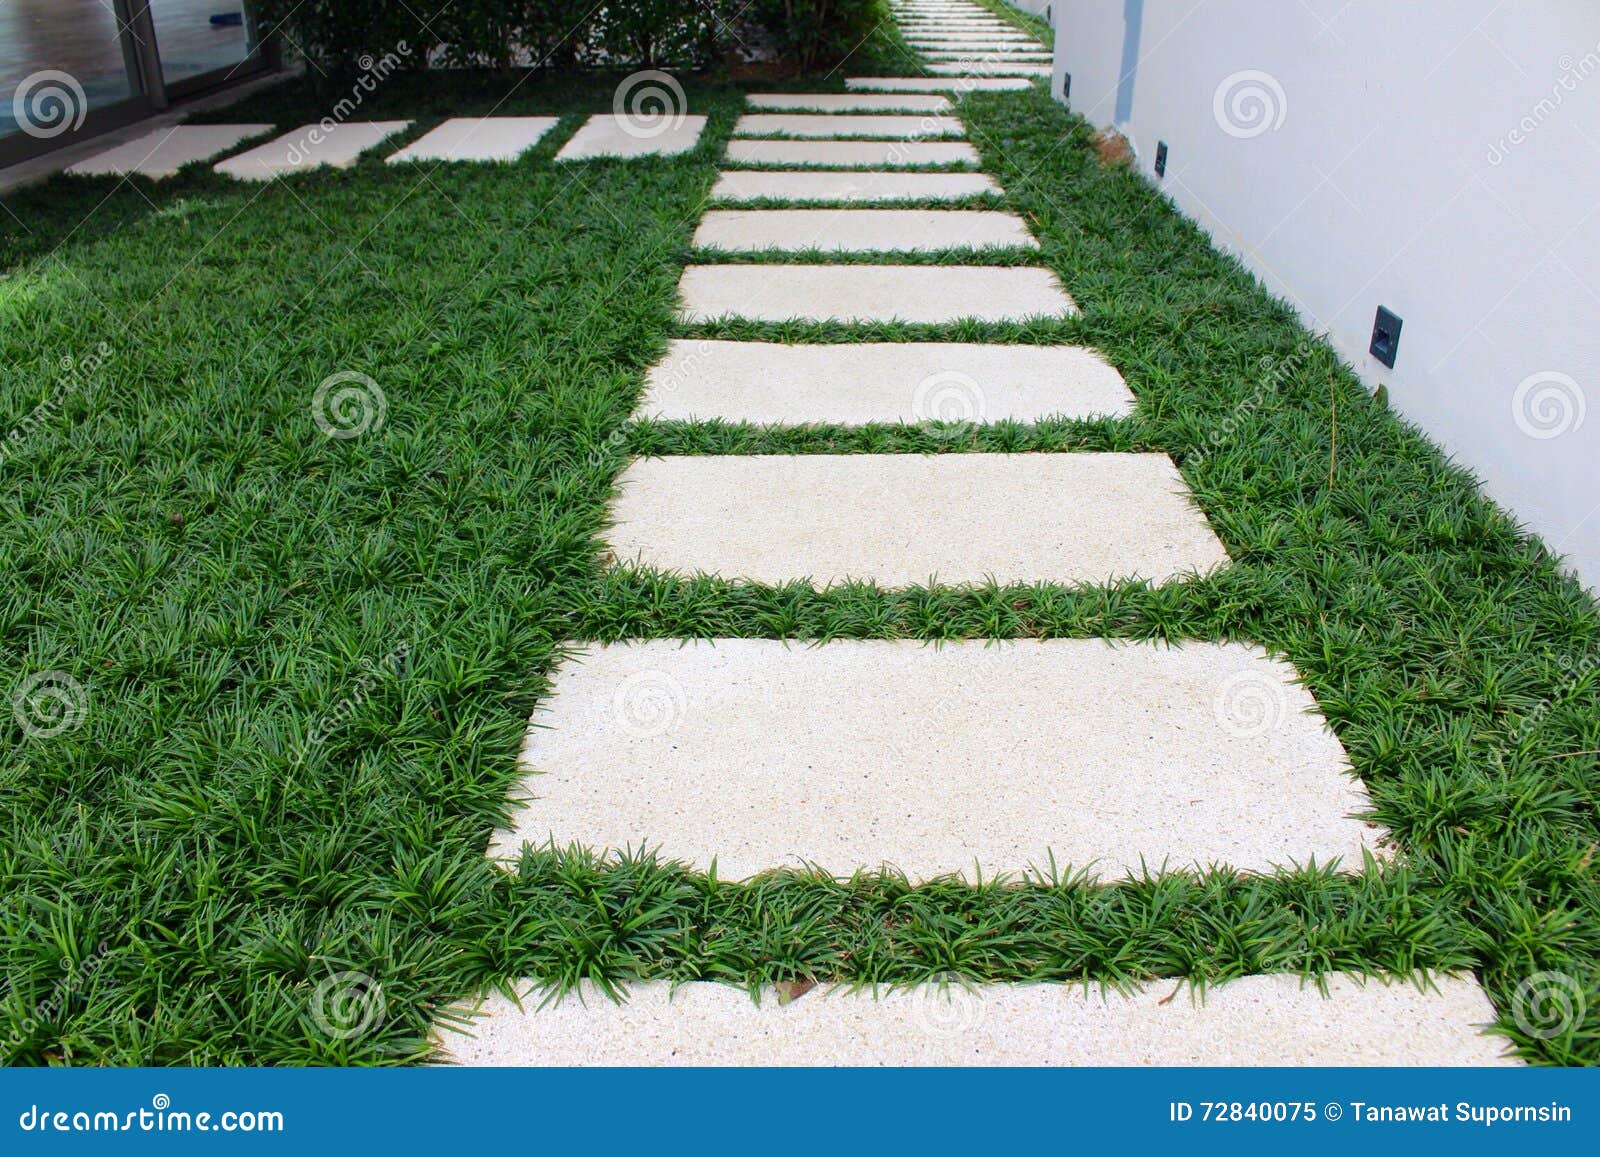 mondo grass between pathway